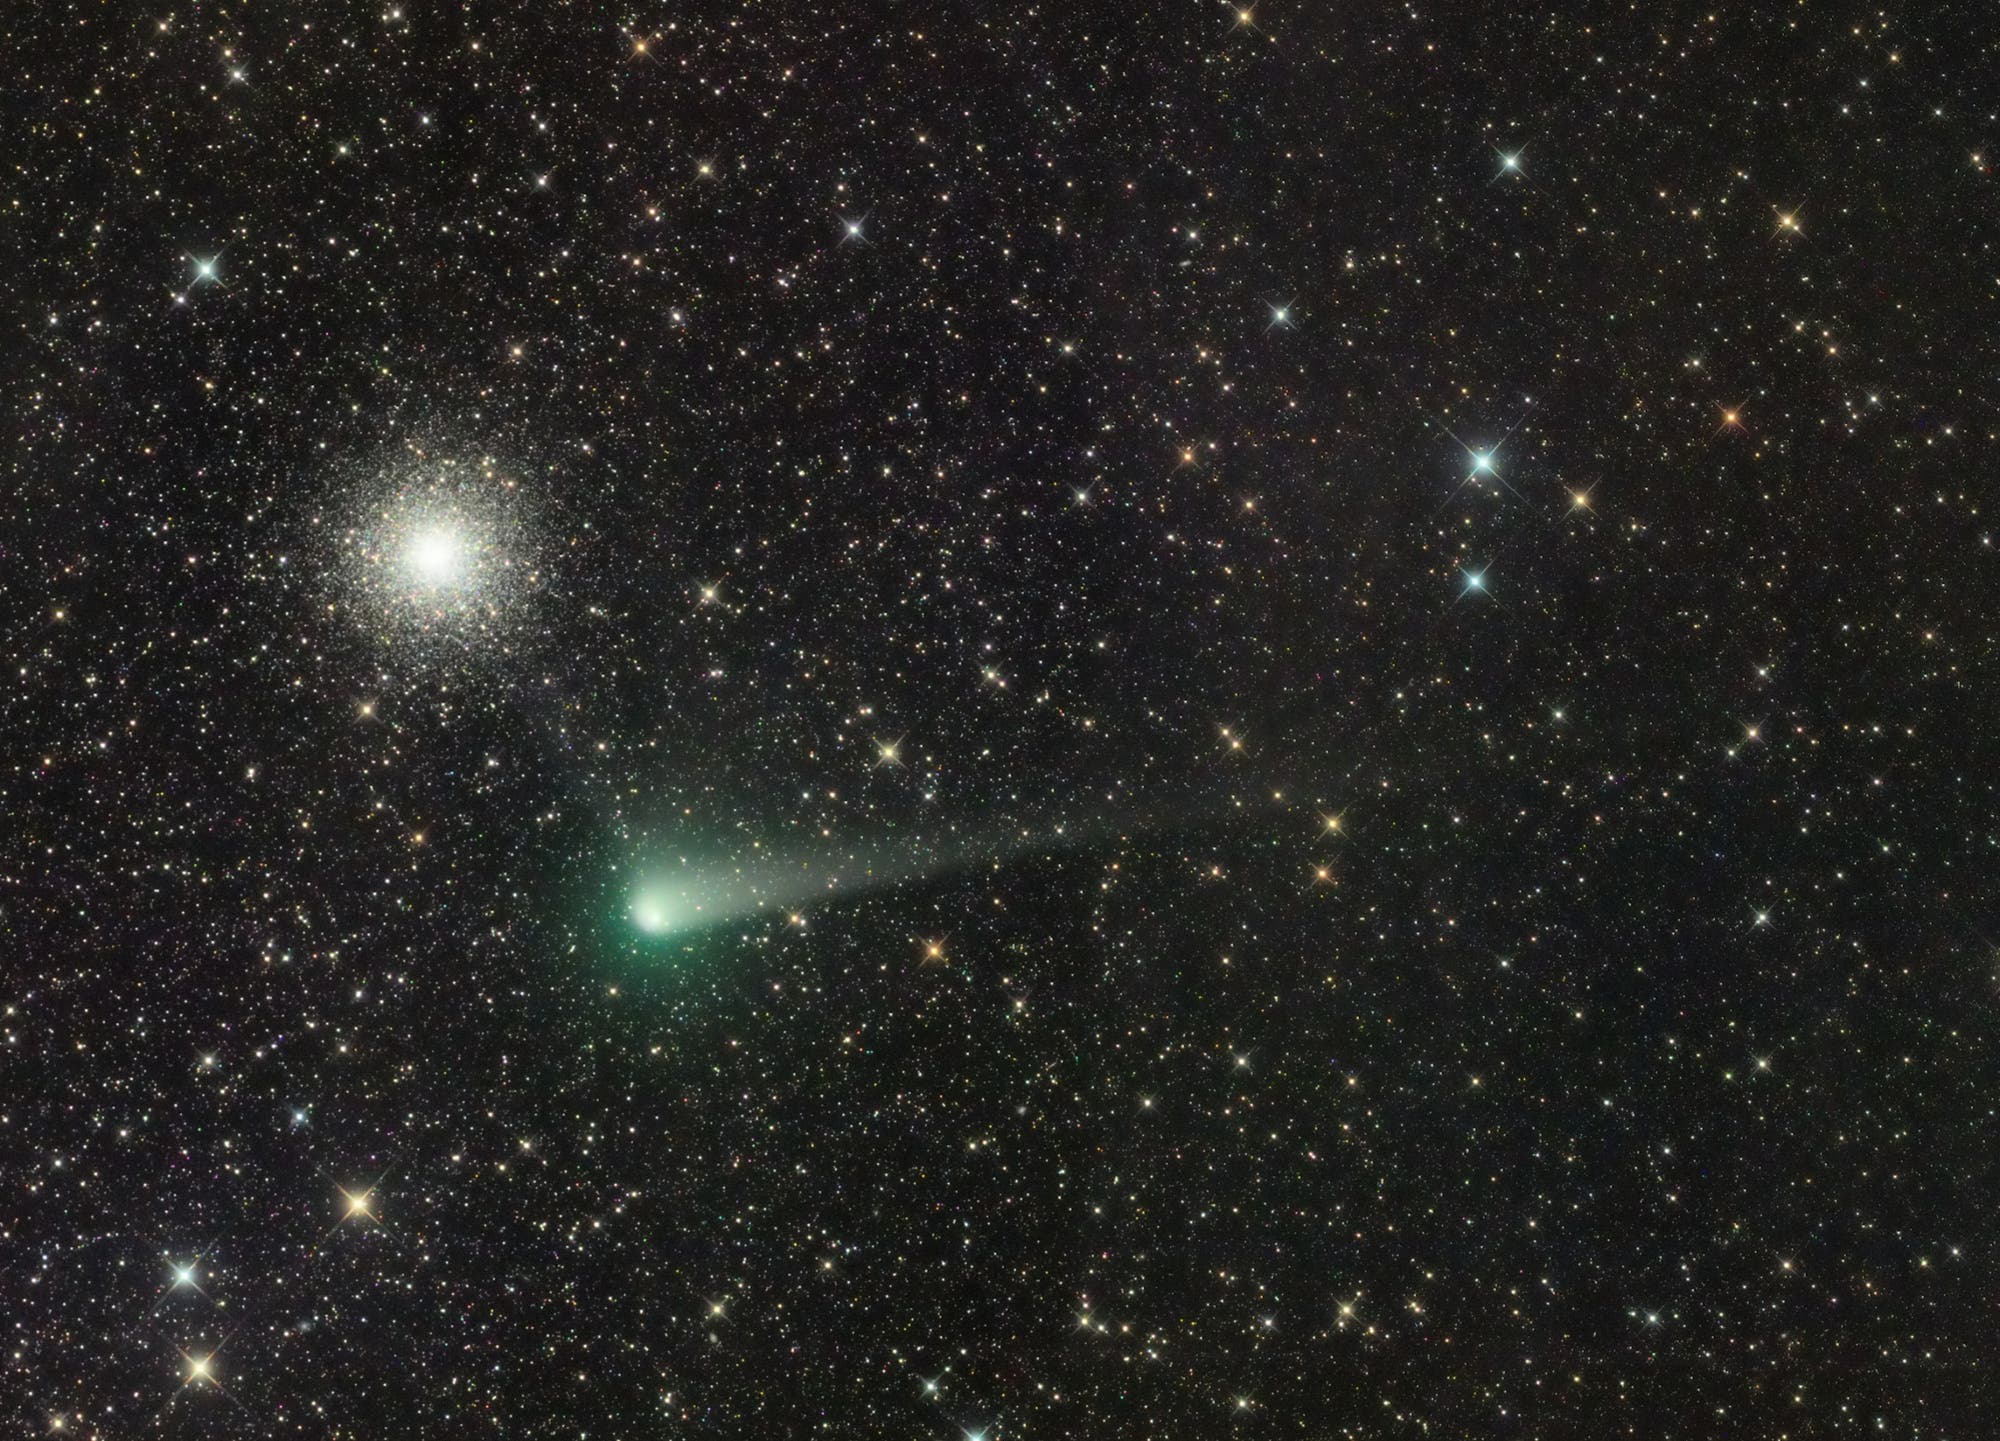 Comet C/2017 K2 (PANSTARRS) and M 10